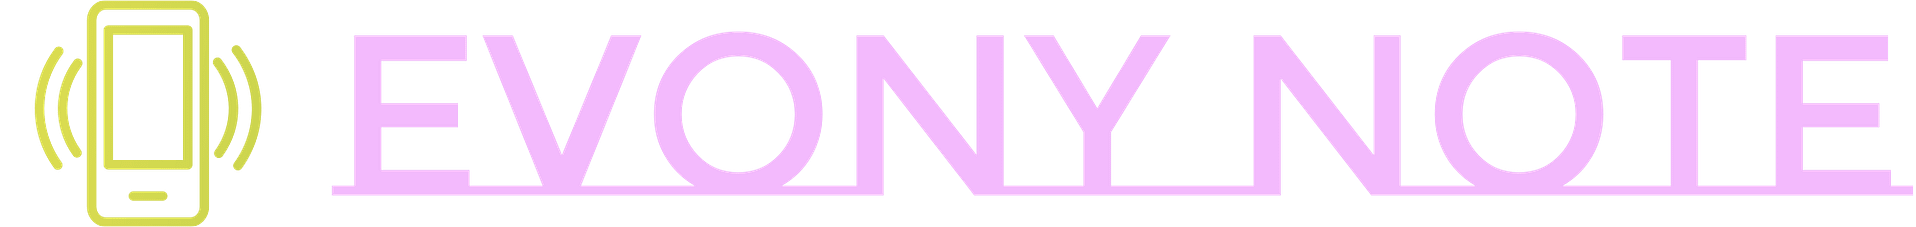 evony-note-logo-transparent